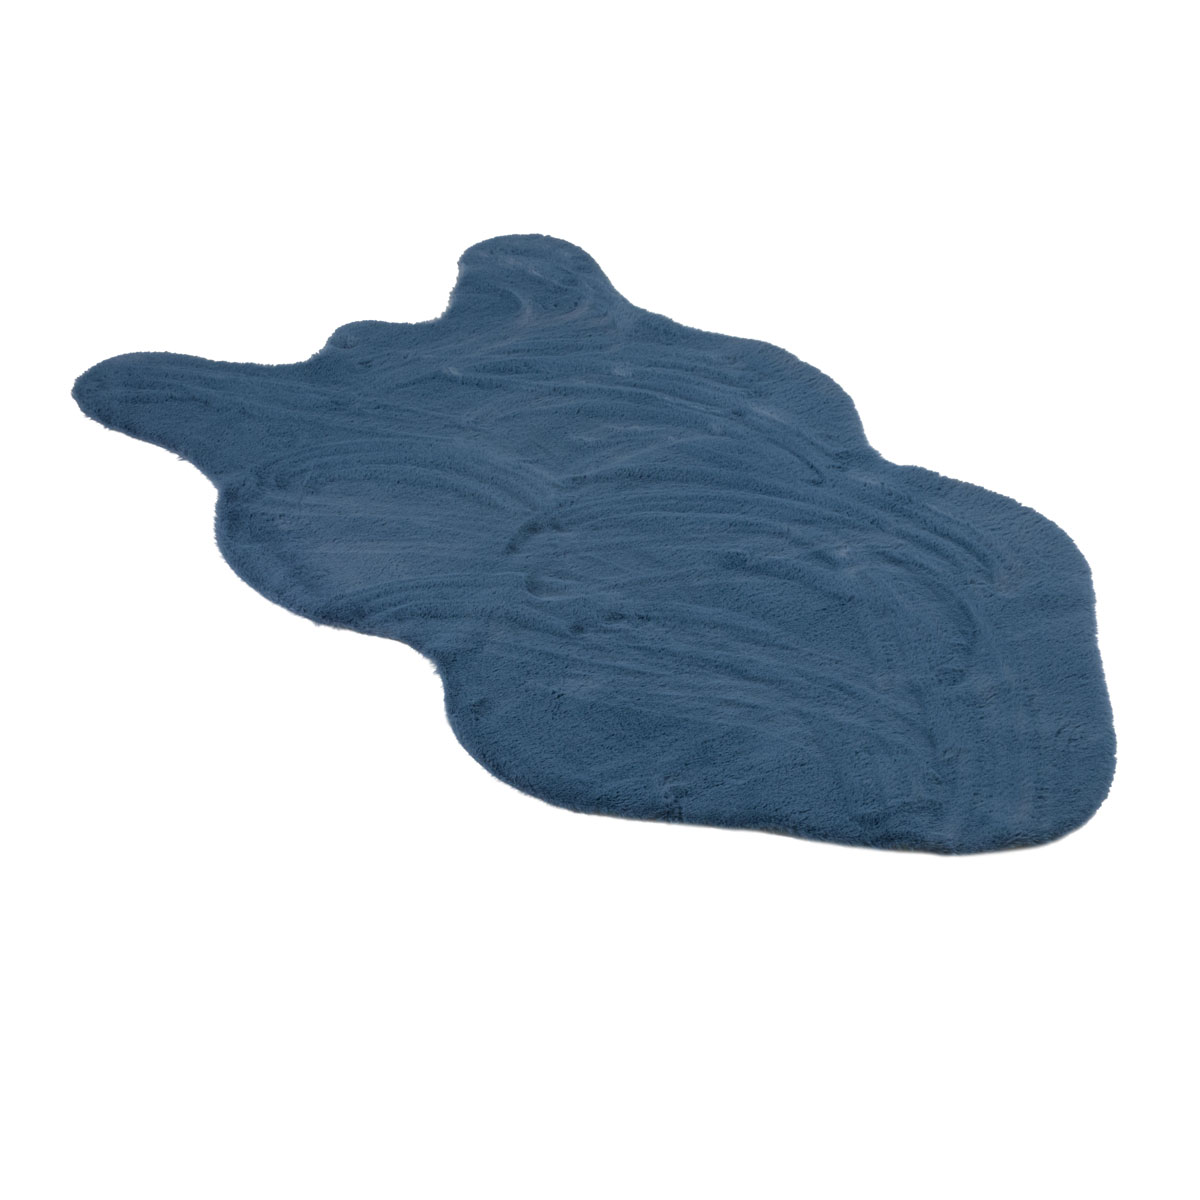 Коврик меховой шкура Shahintex 75х130см аквамариновый Shahintex 829484, цвет синий